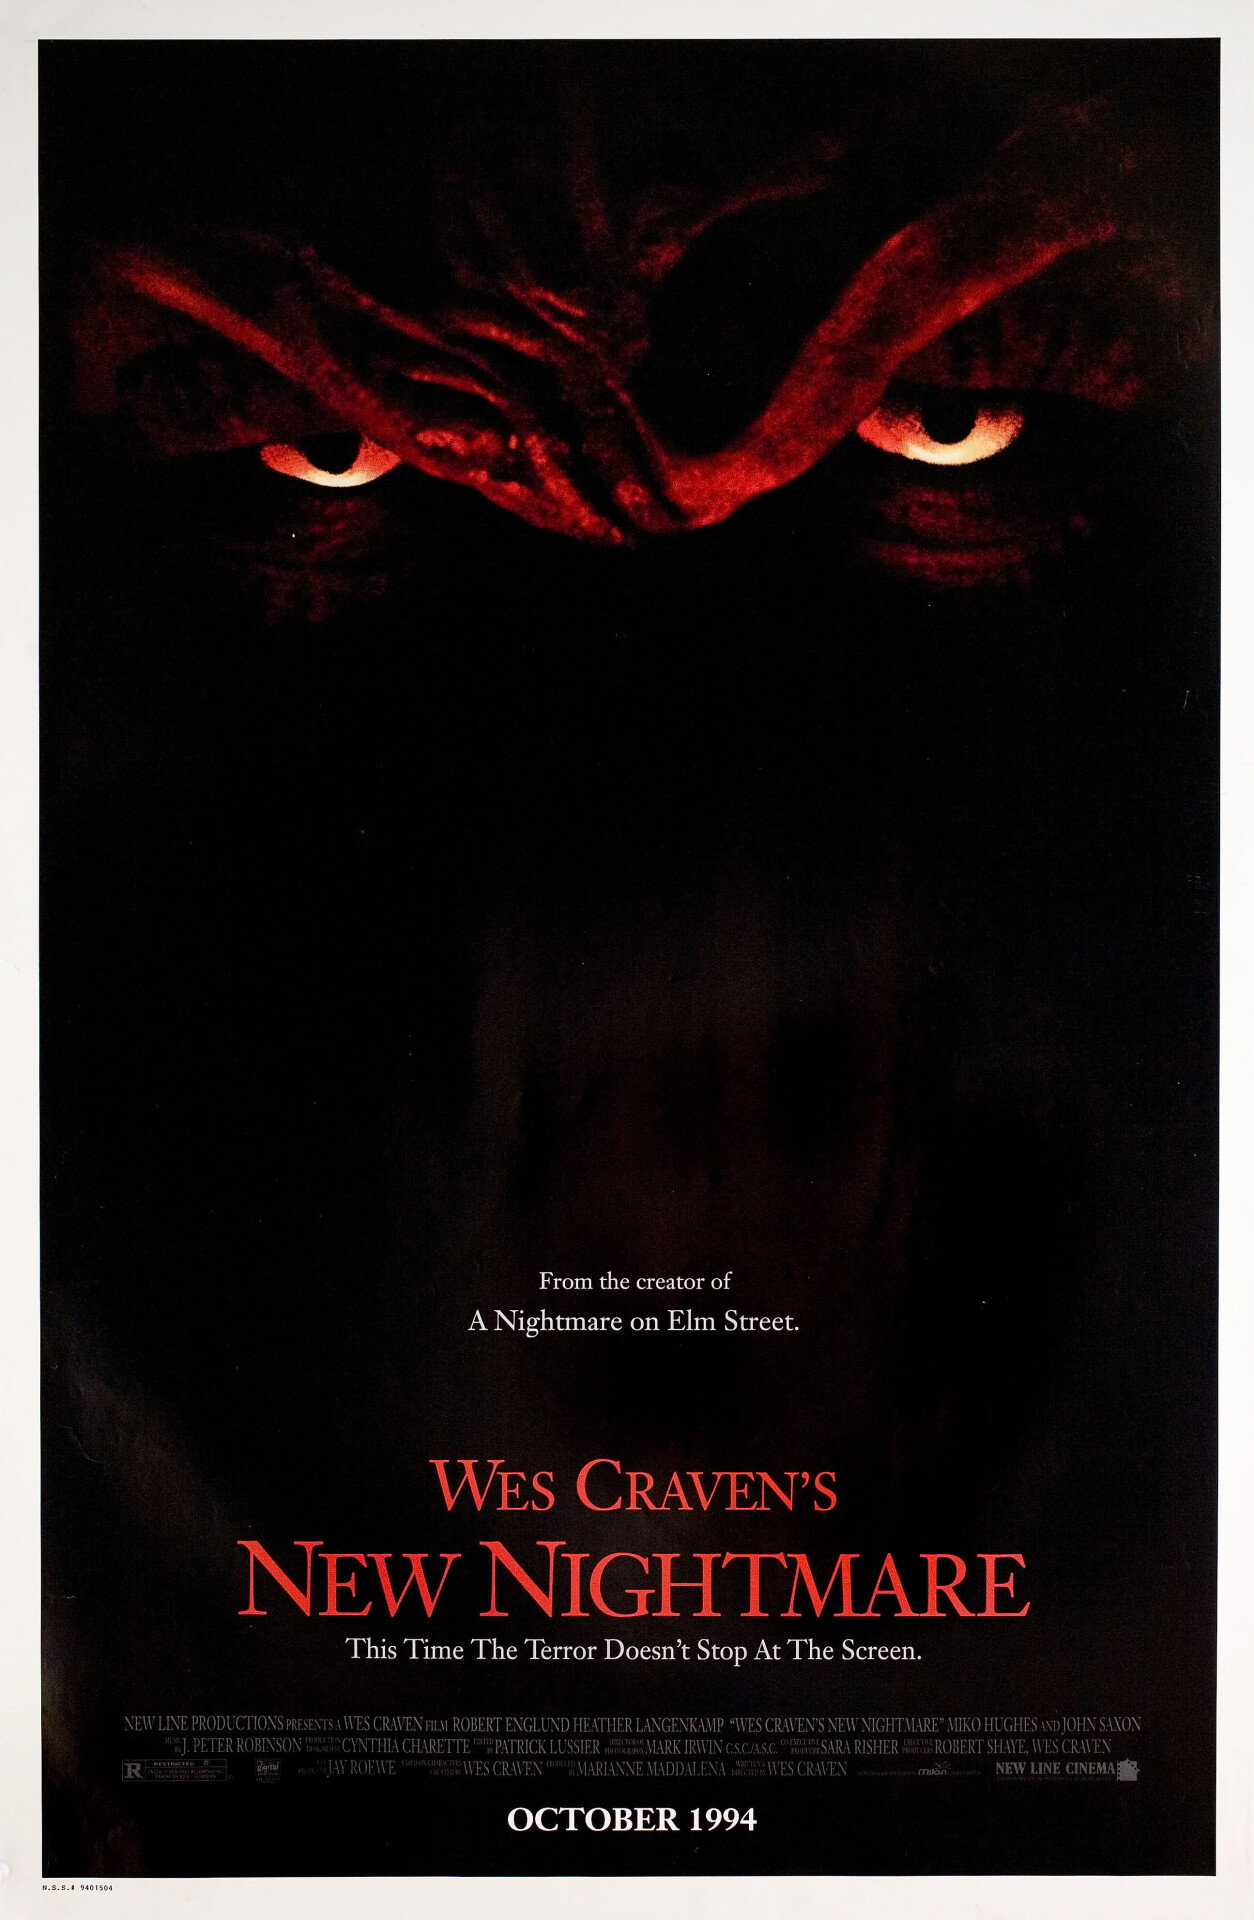 Кошмар на улице Вязов 7: Новый кошмар Уэса Крэйвена (Wes Cravens New Nightmare, 1994), режиссёр Уэс Крэйвен, американский постер к фильму (ужасы, 1994 год)